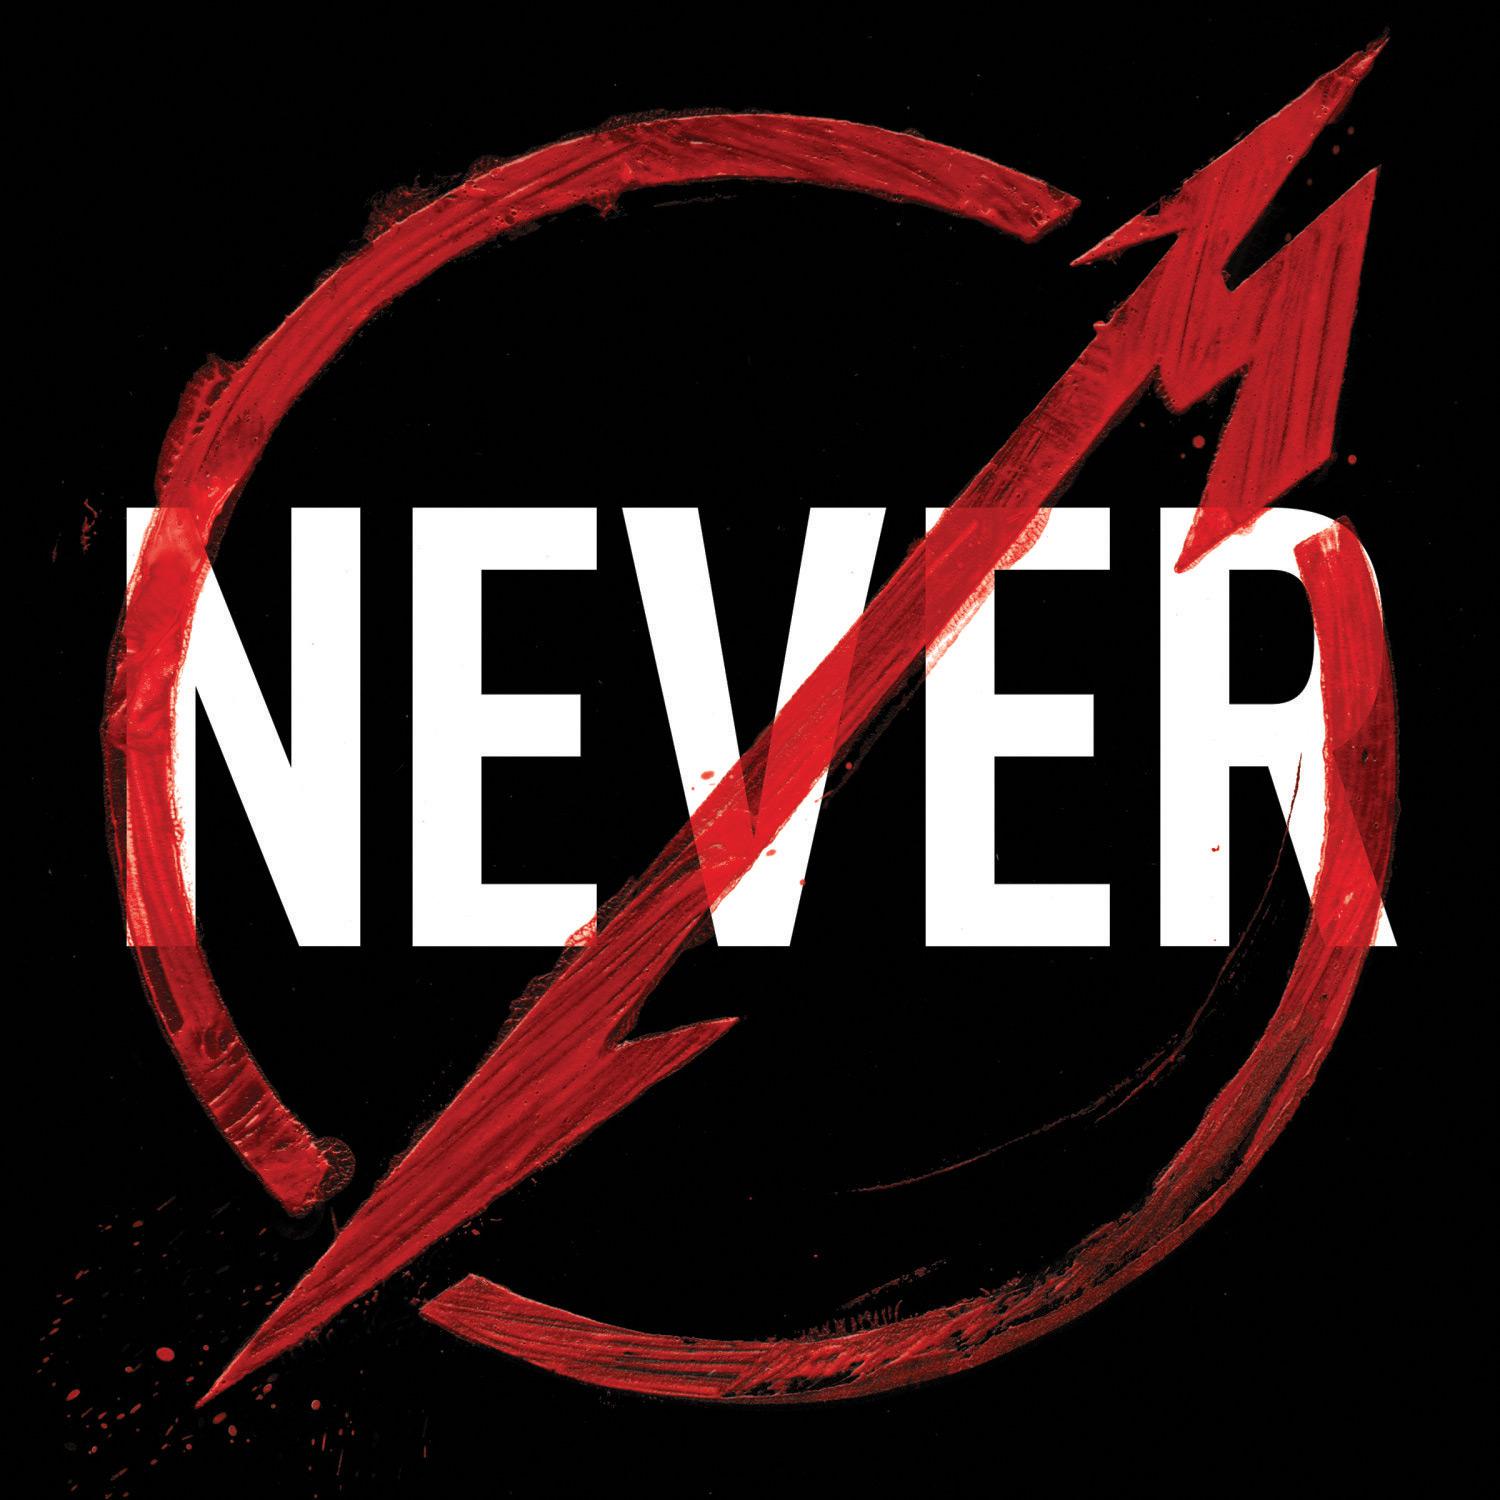 CD - Metallica - Through The Never Deluxe (Duplo) é bom? Vale a pena?